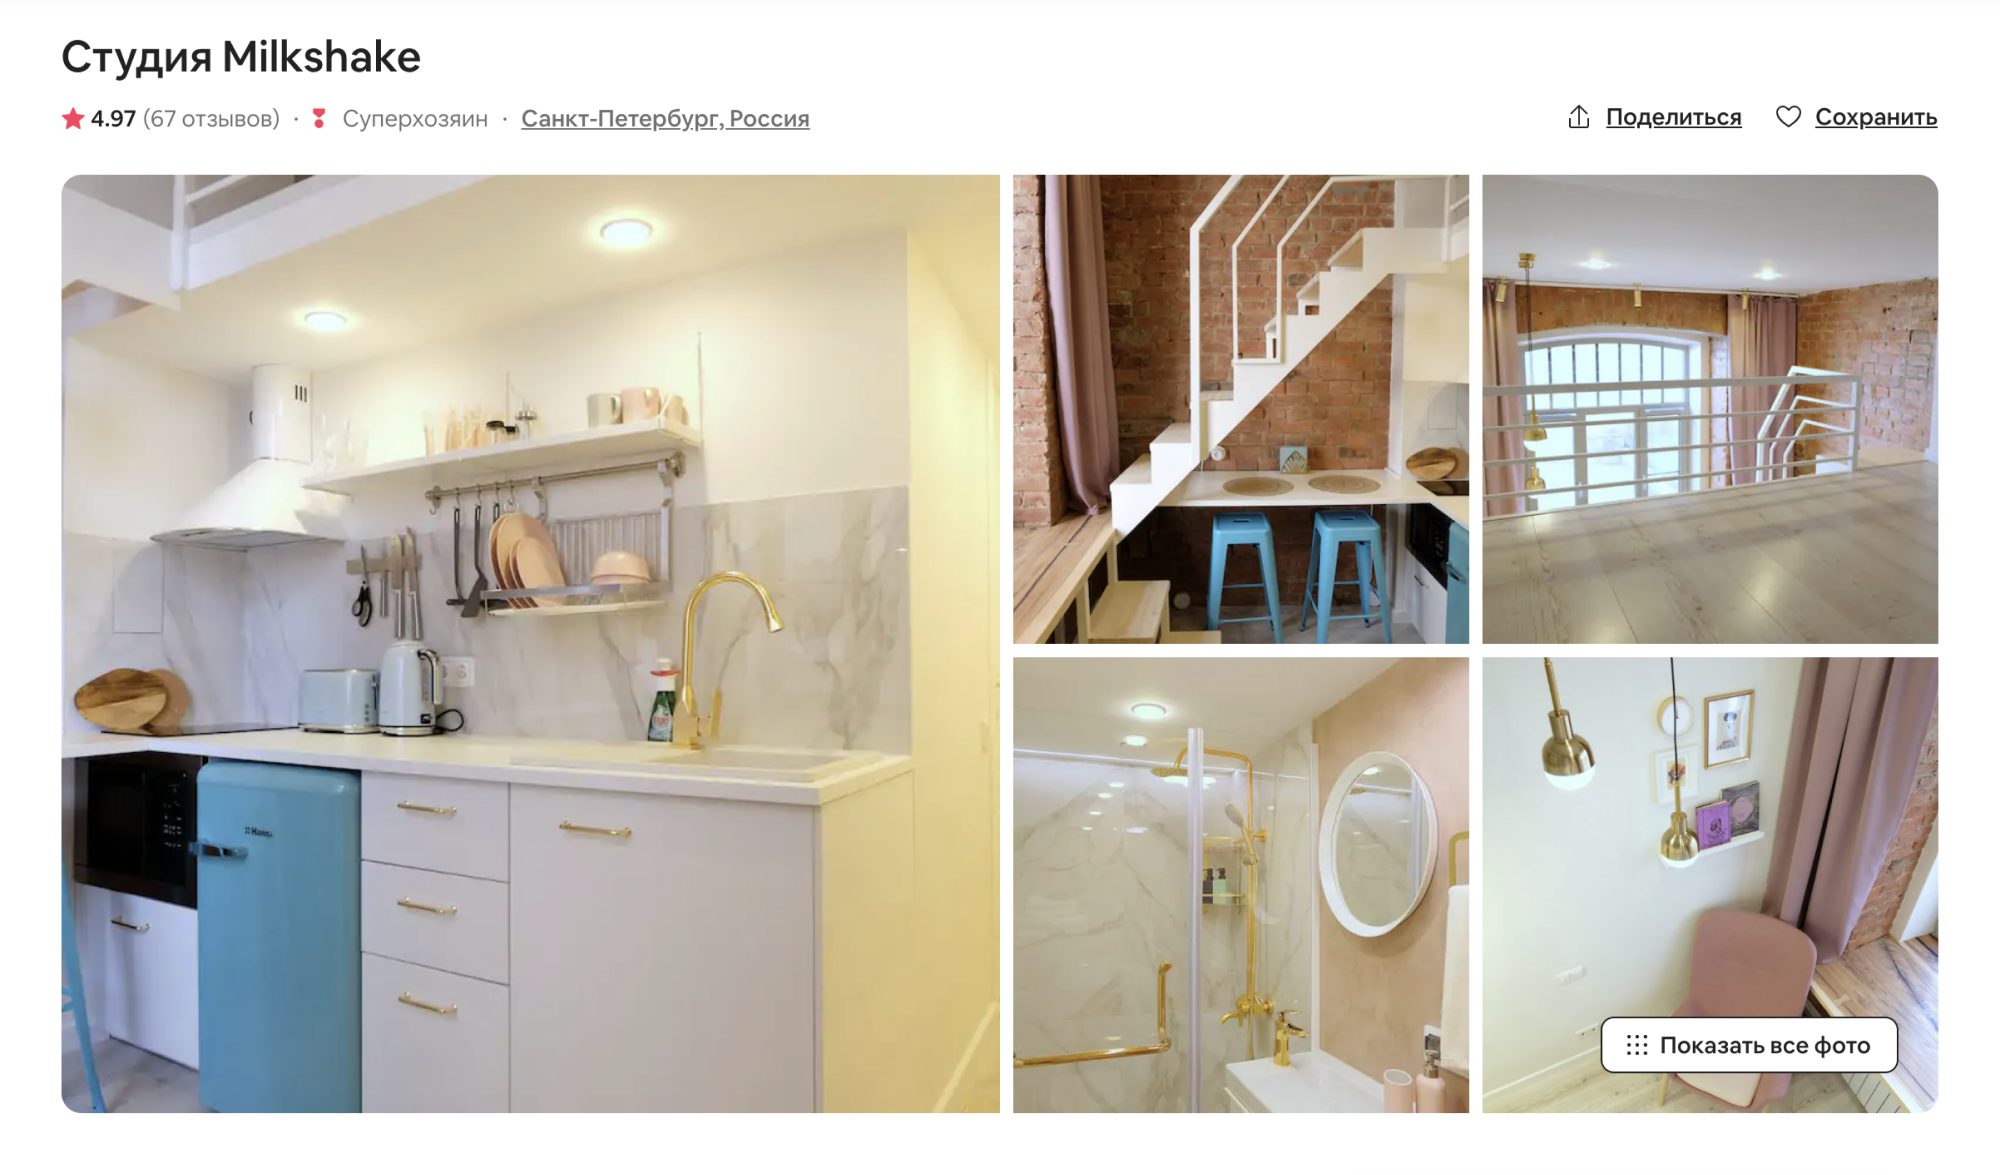 Студия оформлена в приятных оттенках, там была красивая посуда и мебель. Источник: airbnb.ru